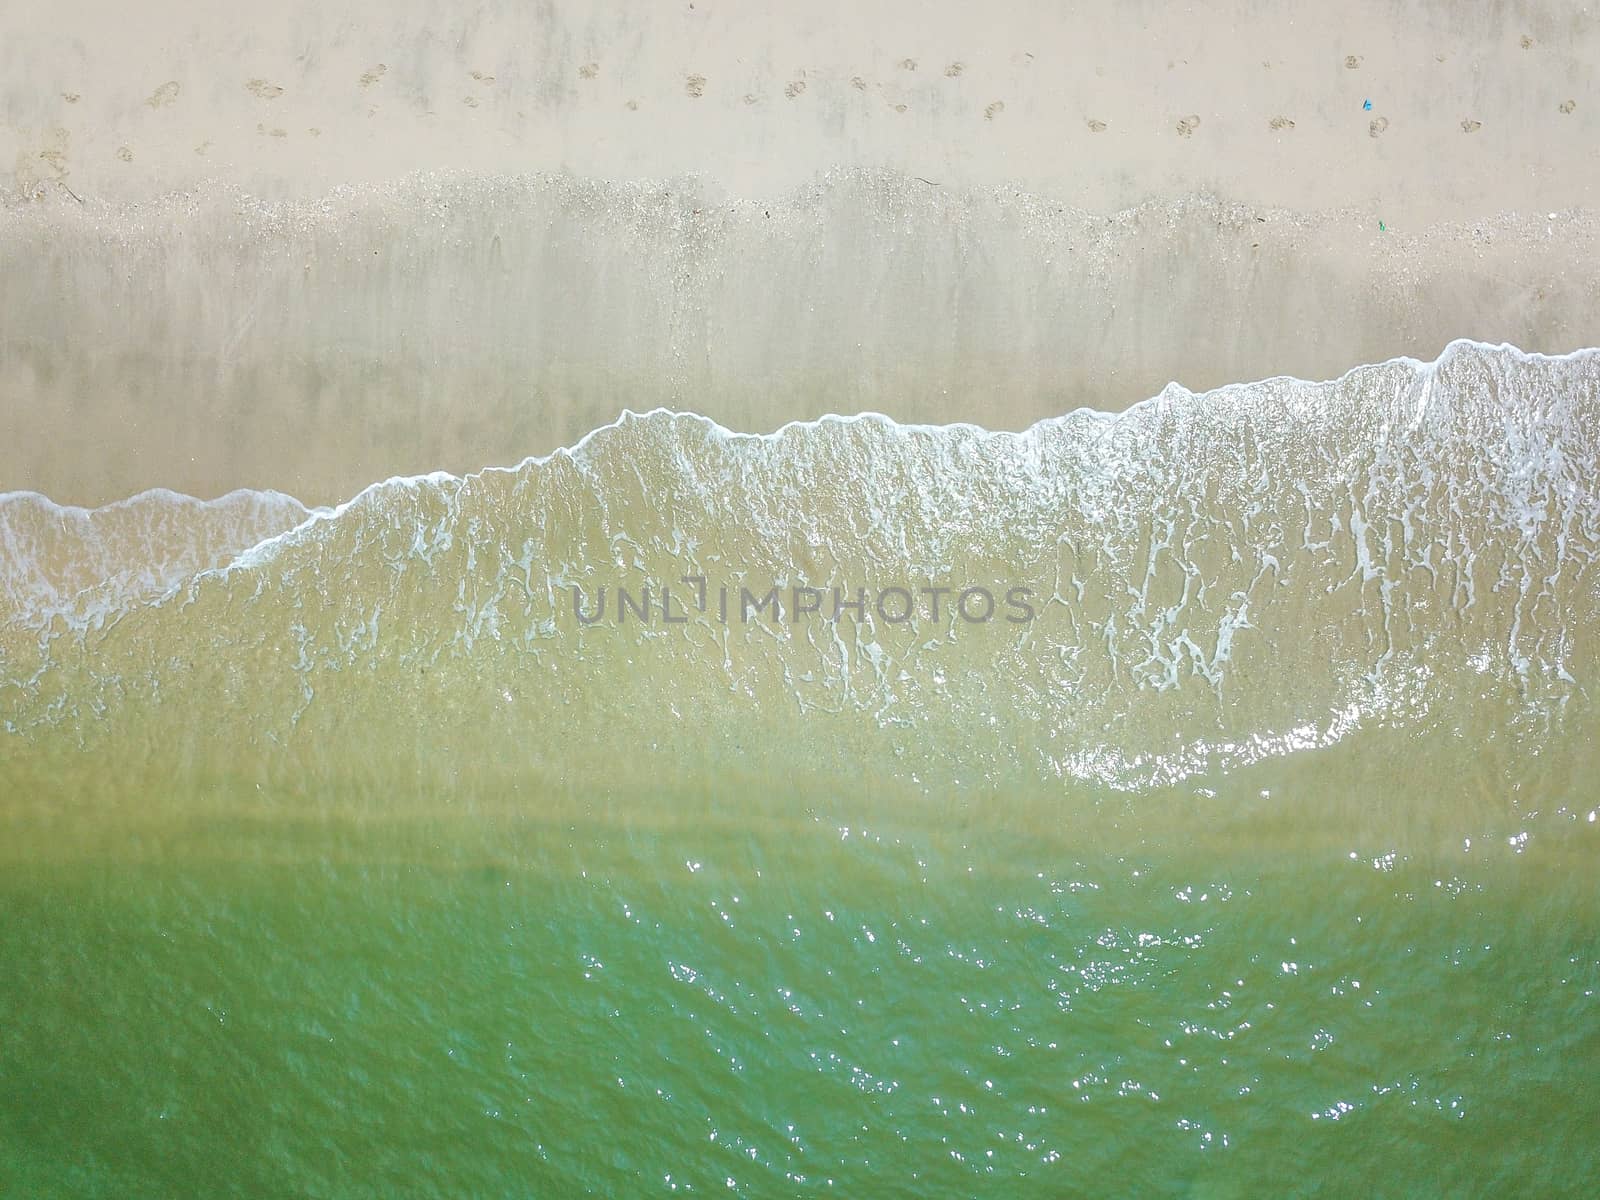 Blue ocean wave on clean sandy beach by silverwings